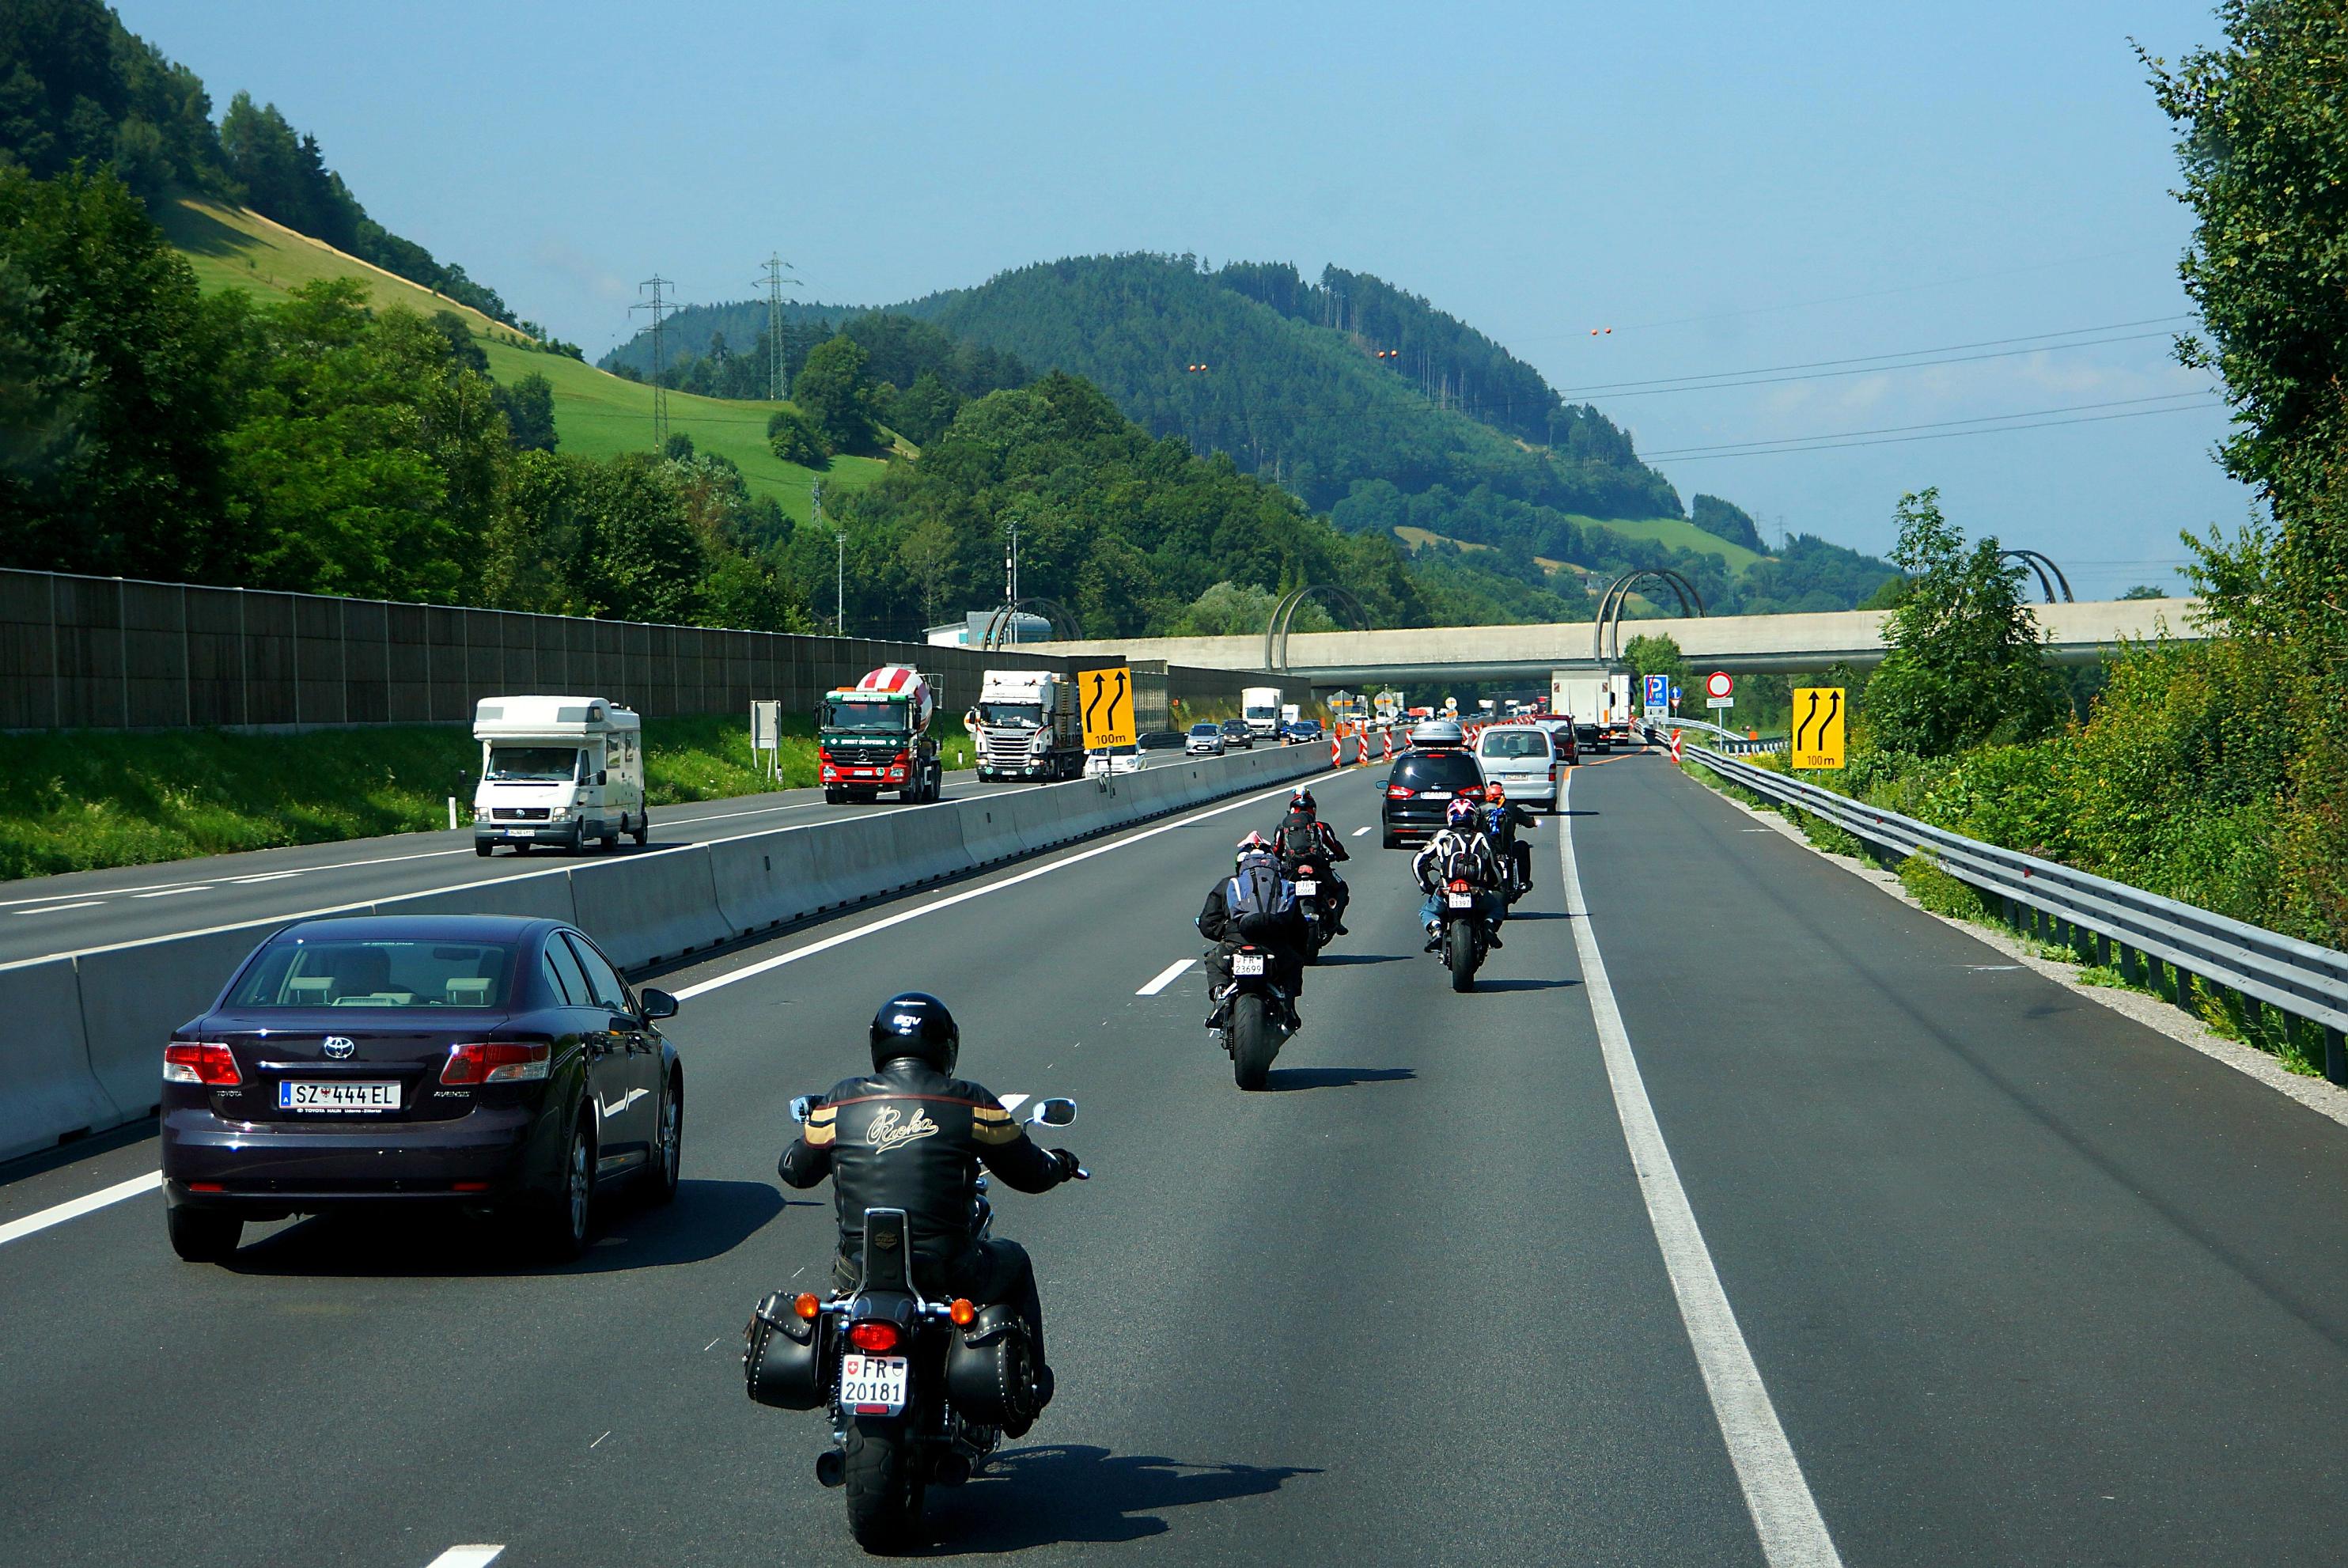 德国高速不限速,却很少发生车祸,这是为何?原因值得我们反思!